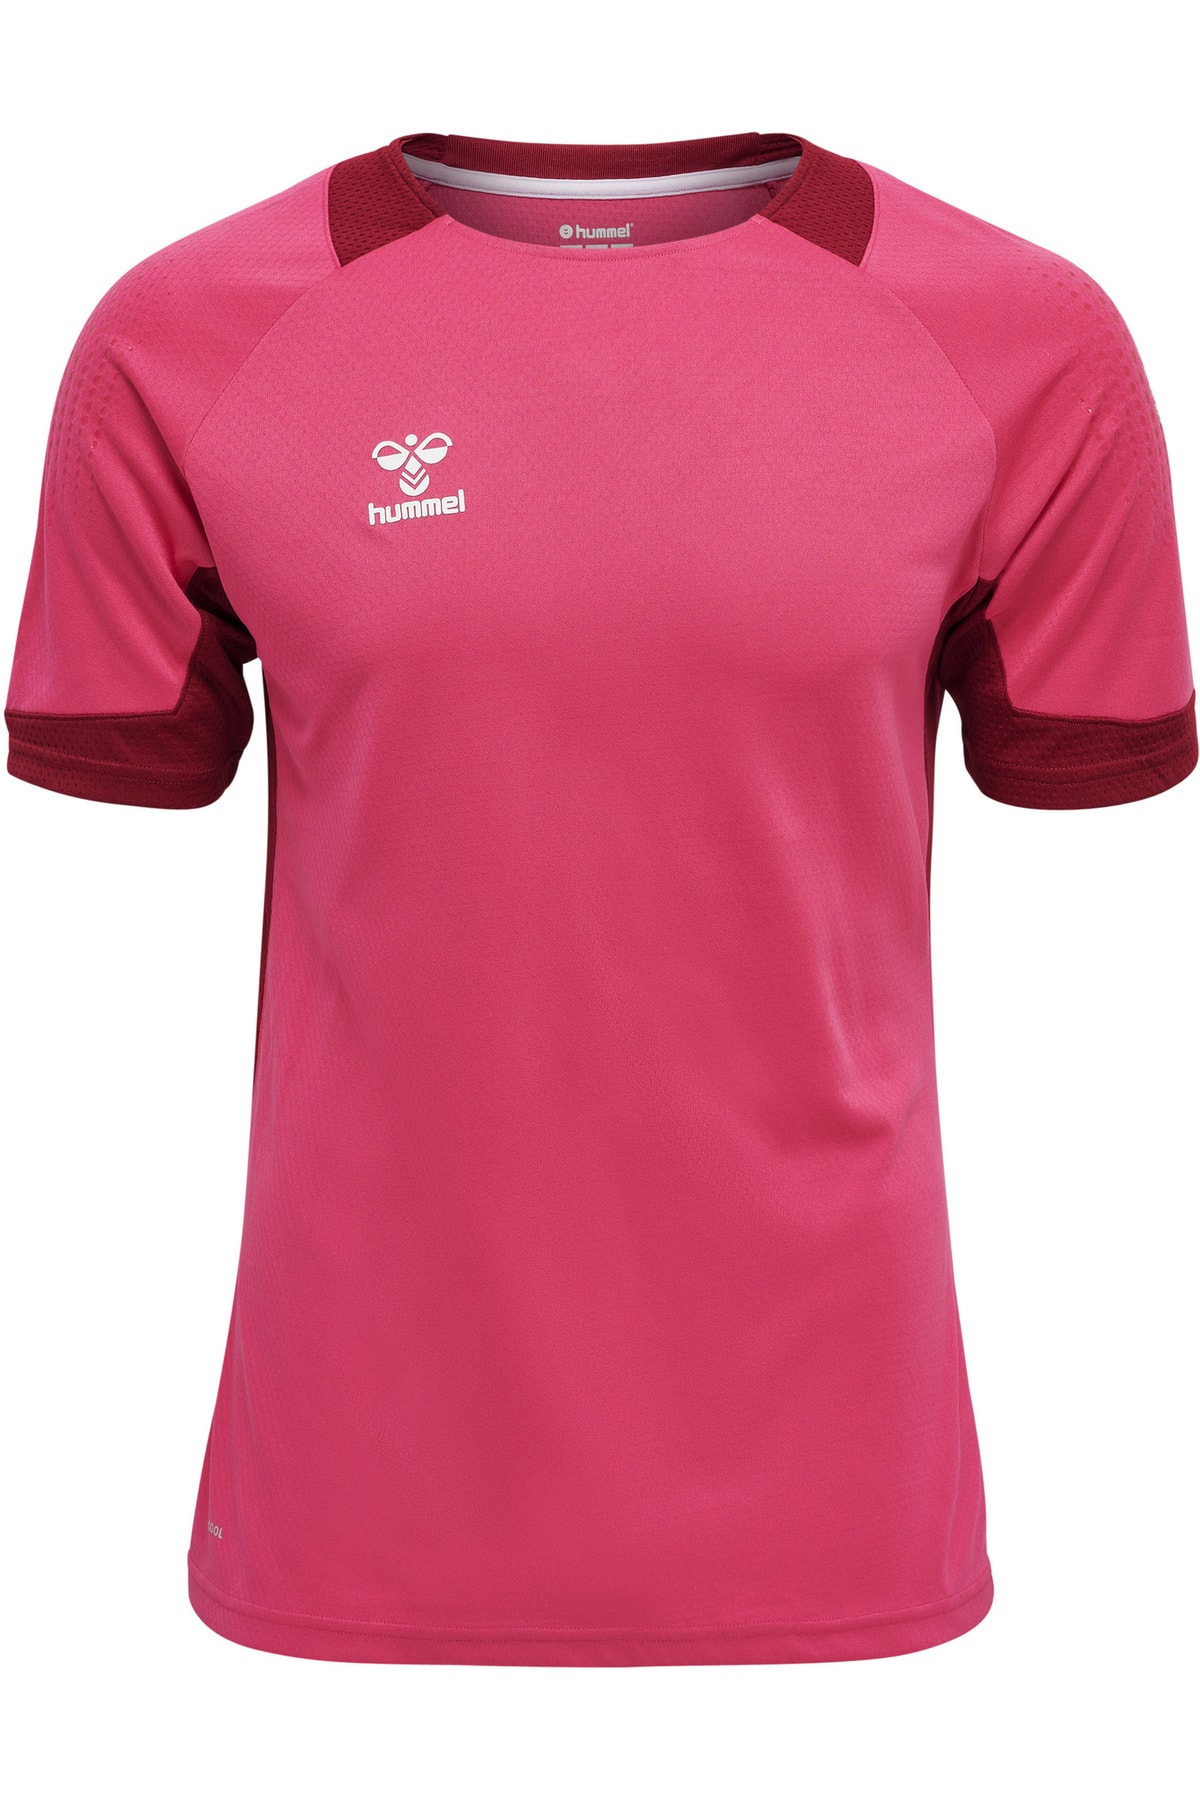 HUMMEL T-Shirt Rosa Regular Fit